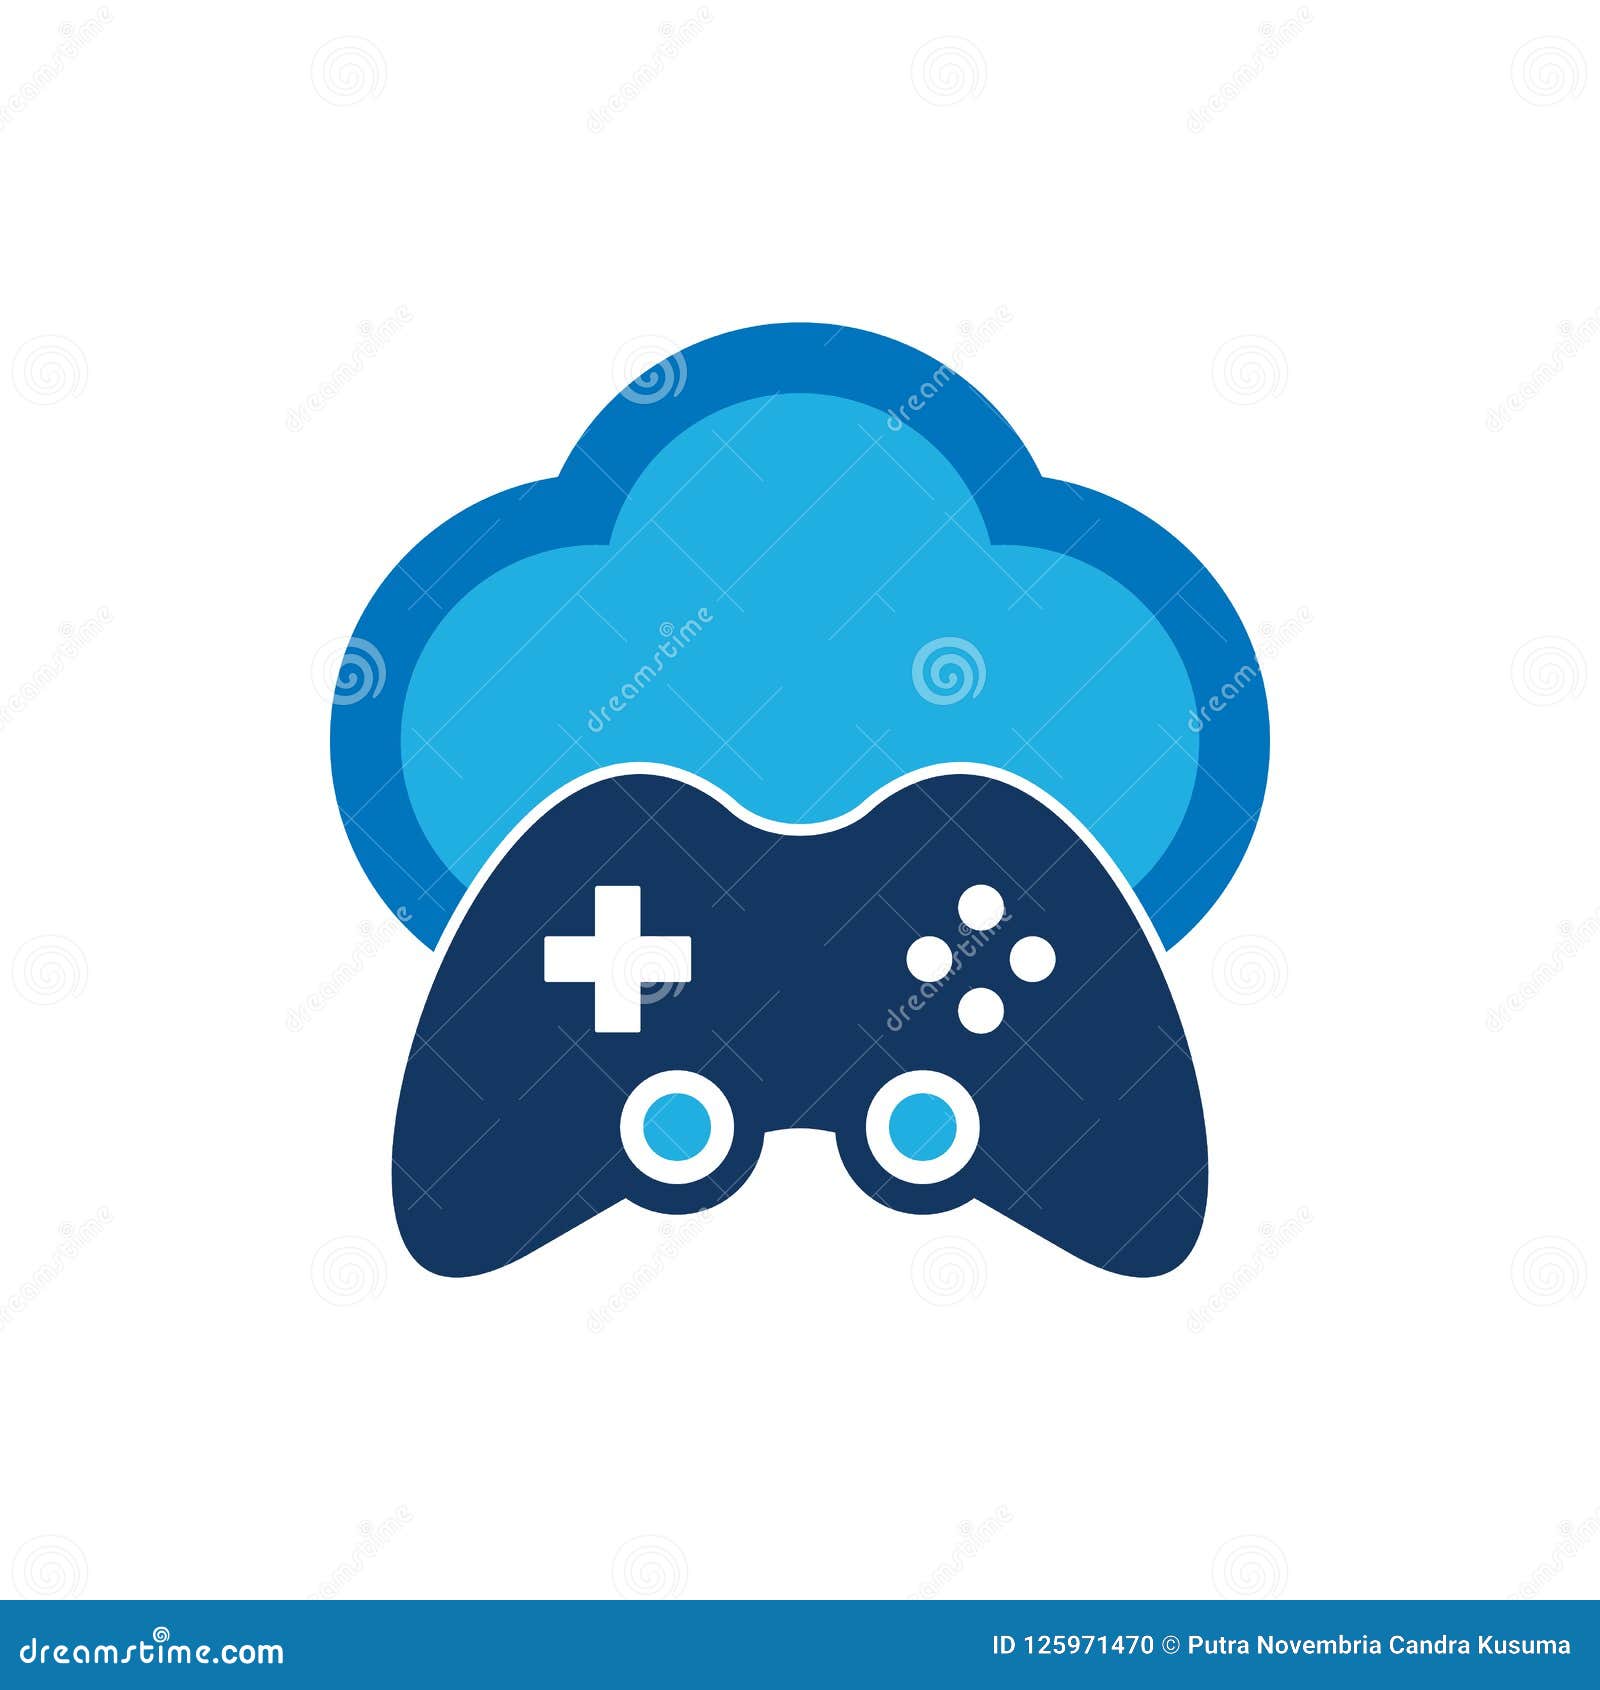 Jogos na nuvem - ícones de jogos grátis